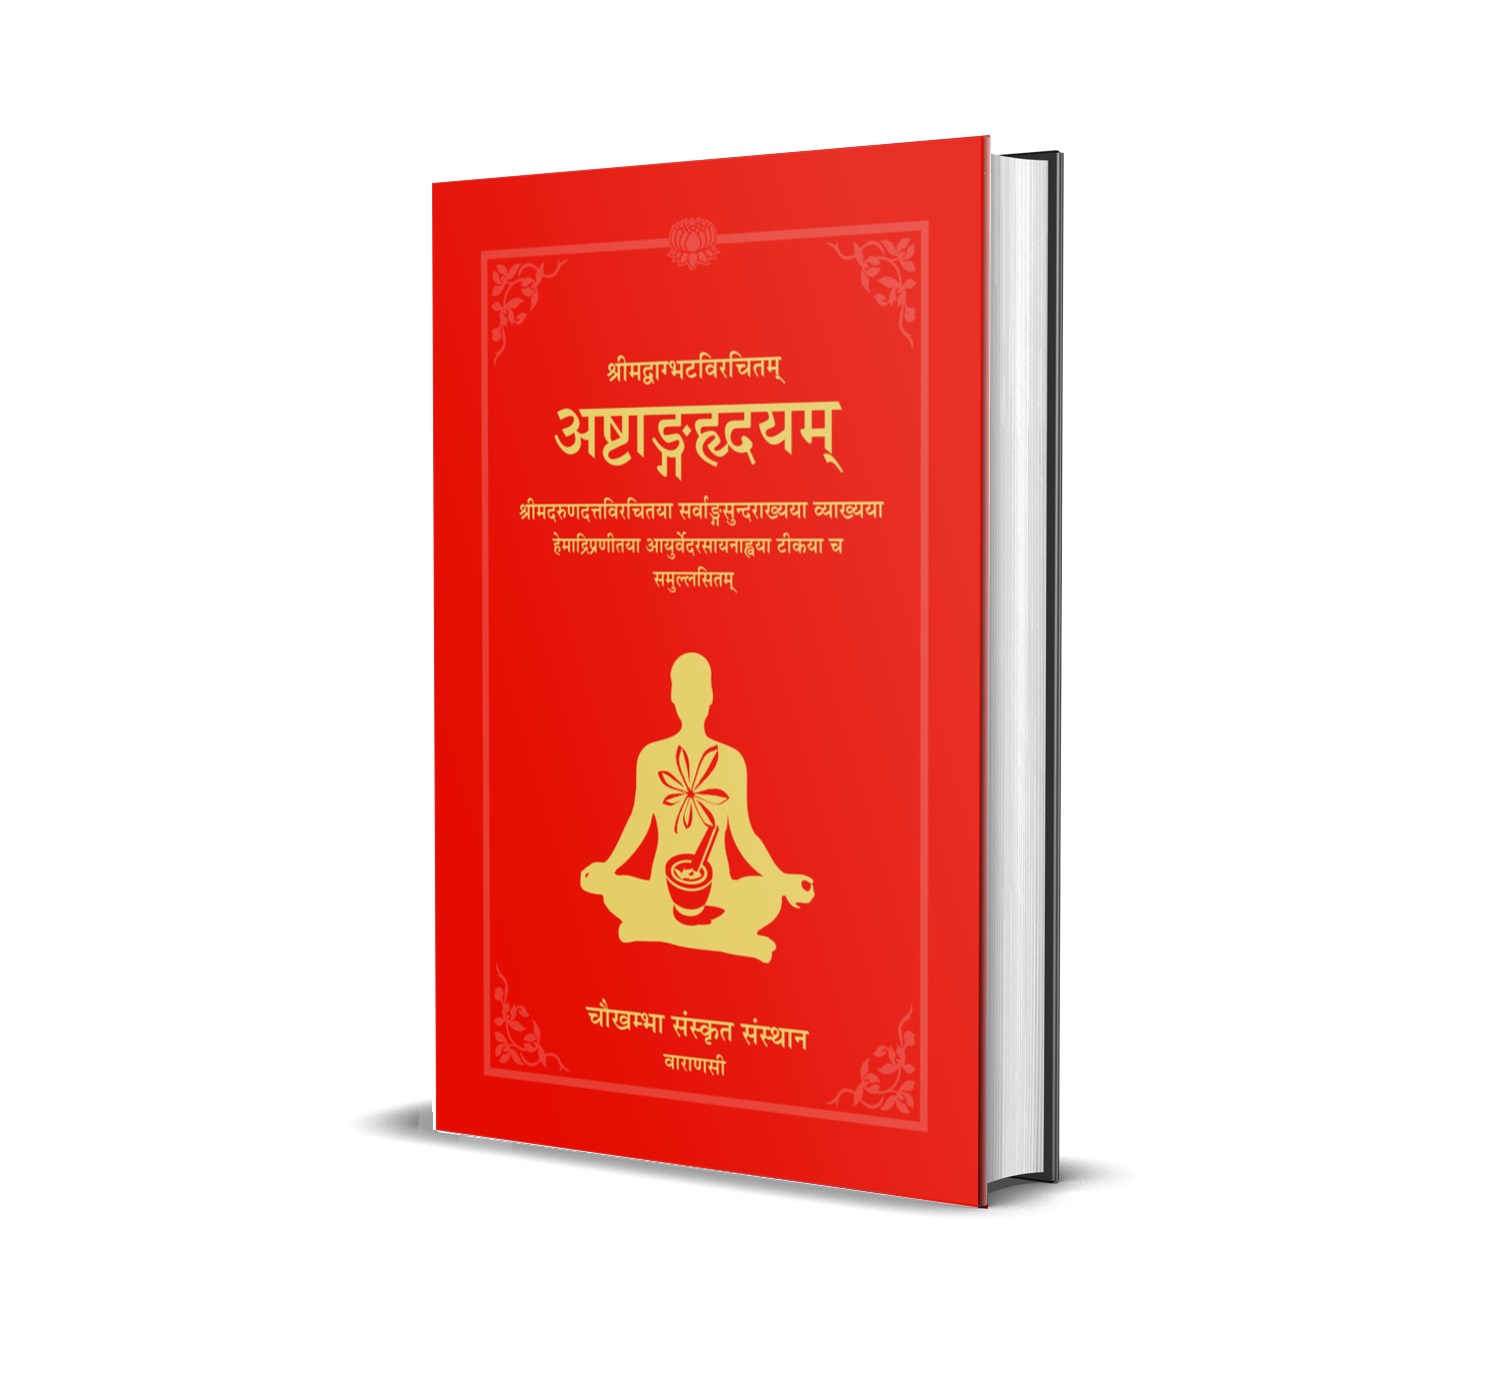 Ashtang Hridaya (The Core of octopartite Ayurveda) composed by Vagbhatta with the commentaries Sarvangasundara of Arundutta and Ayurveda Rasayana of Hemadri.